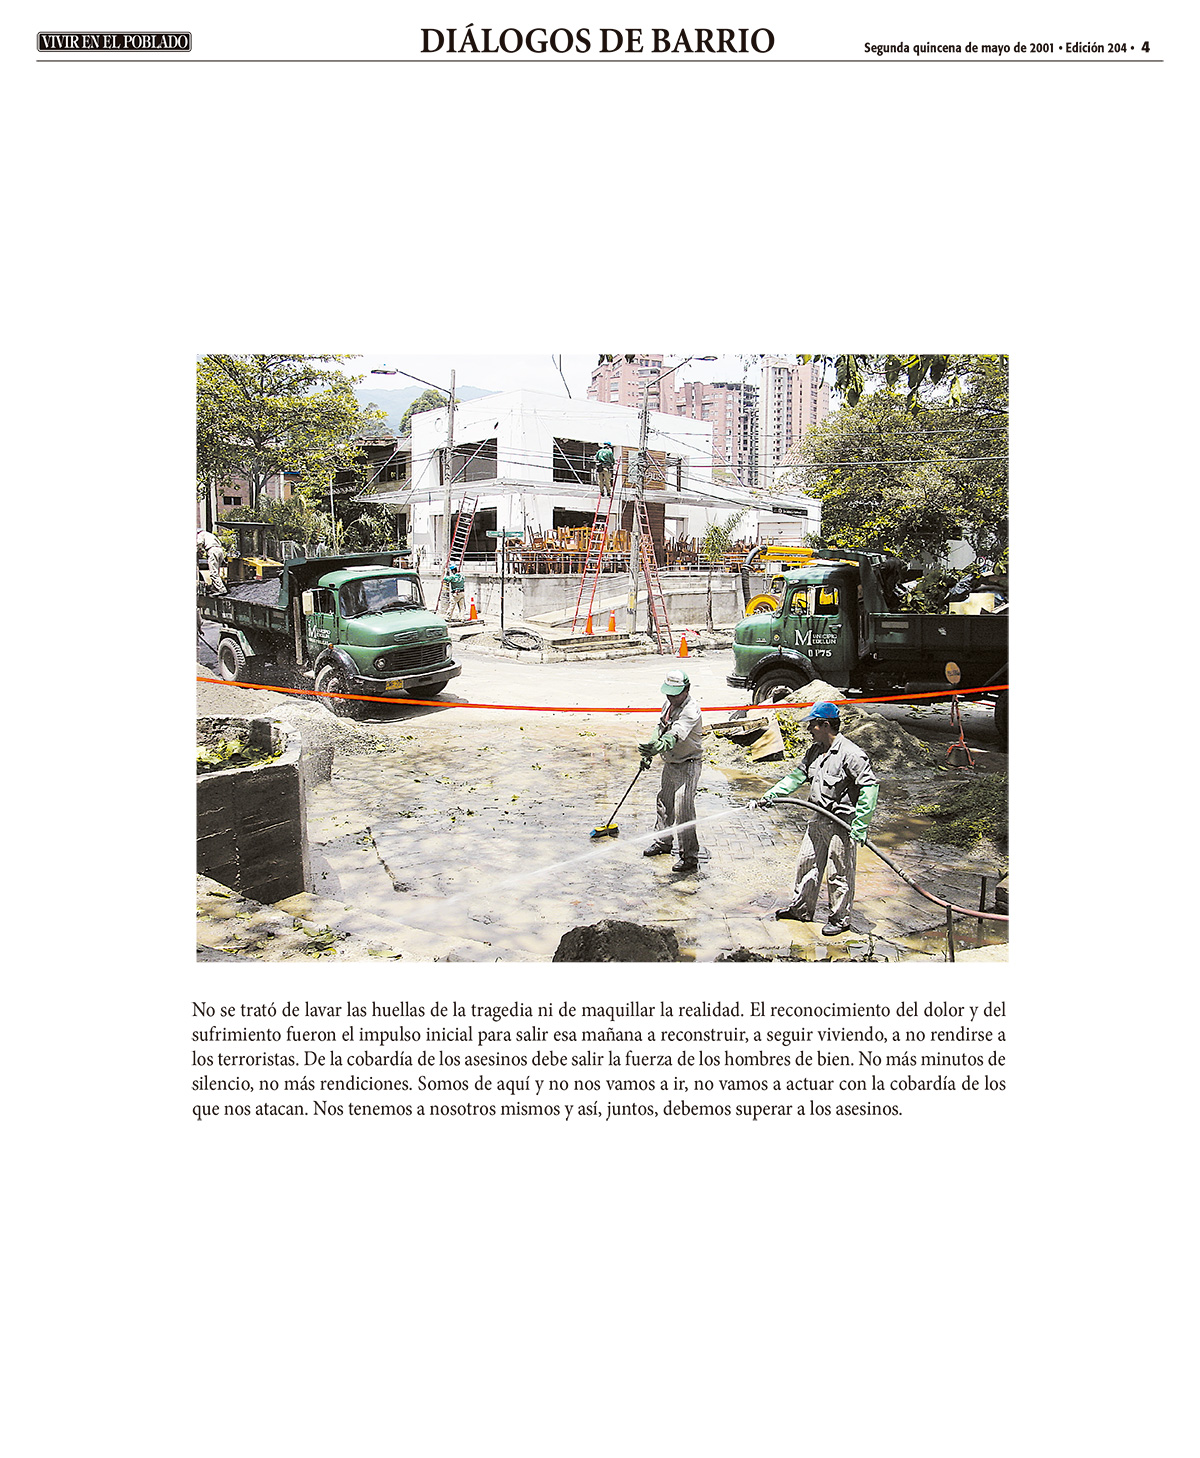 #TBT de la bomba del parque Lleras: el día después